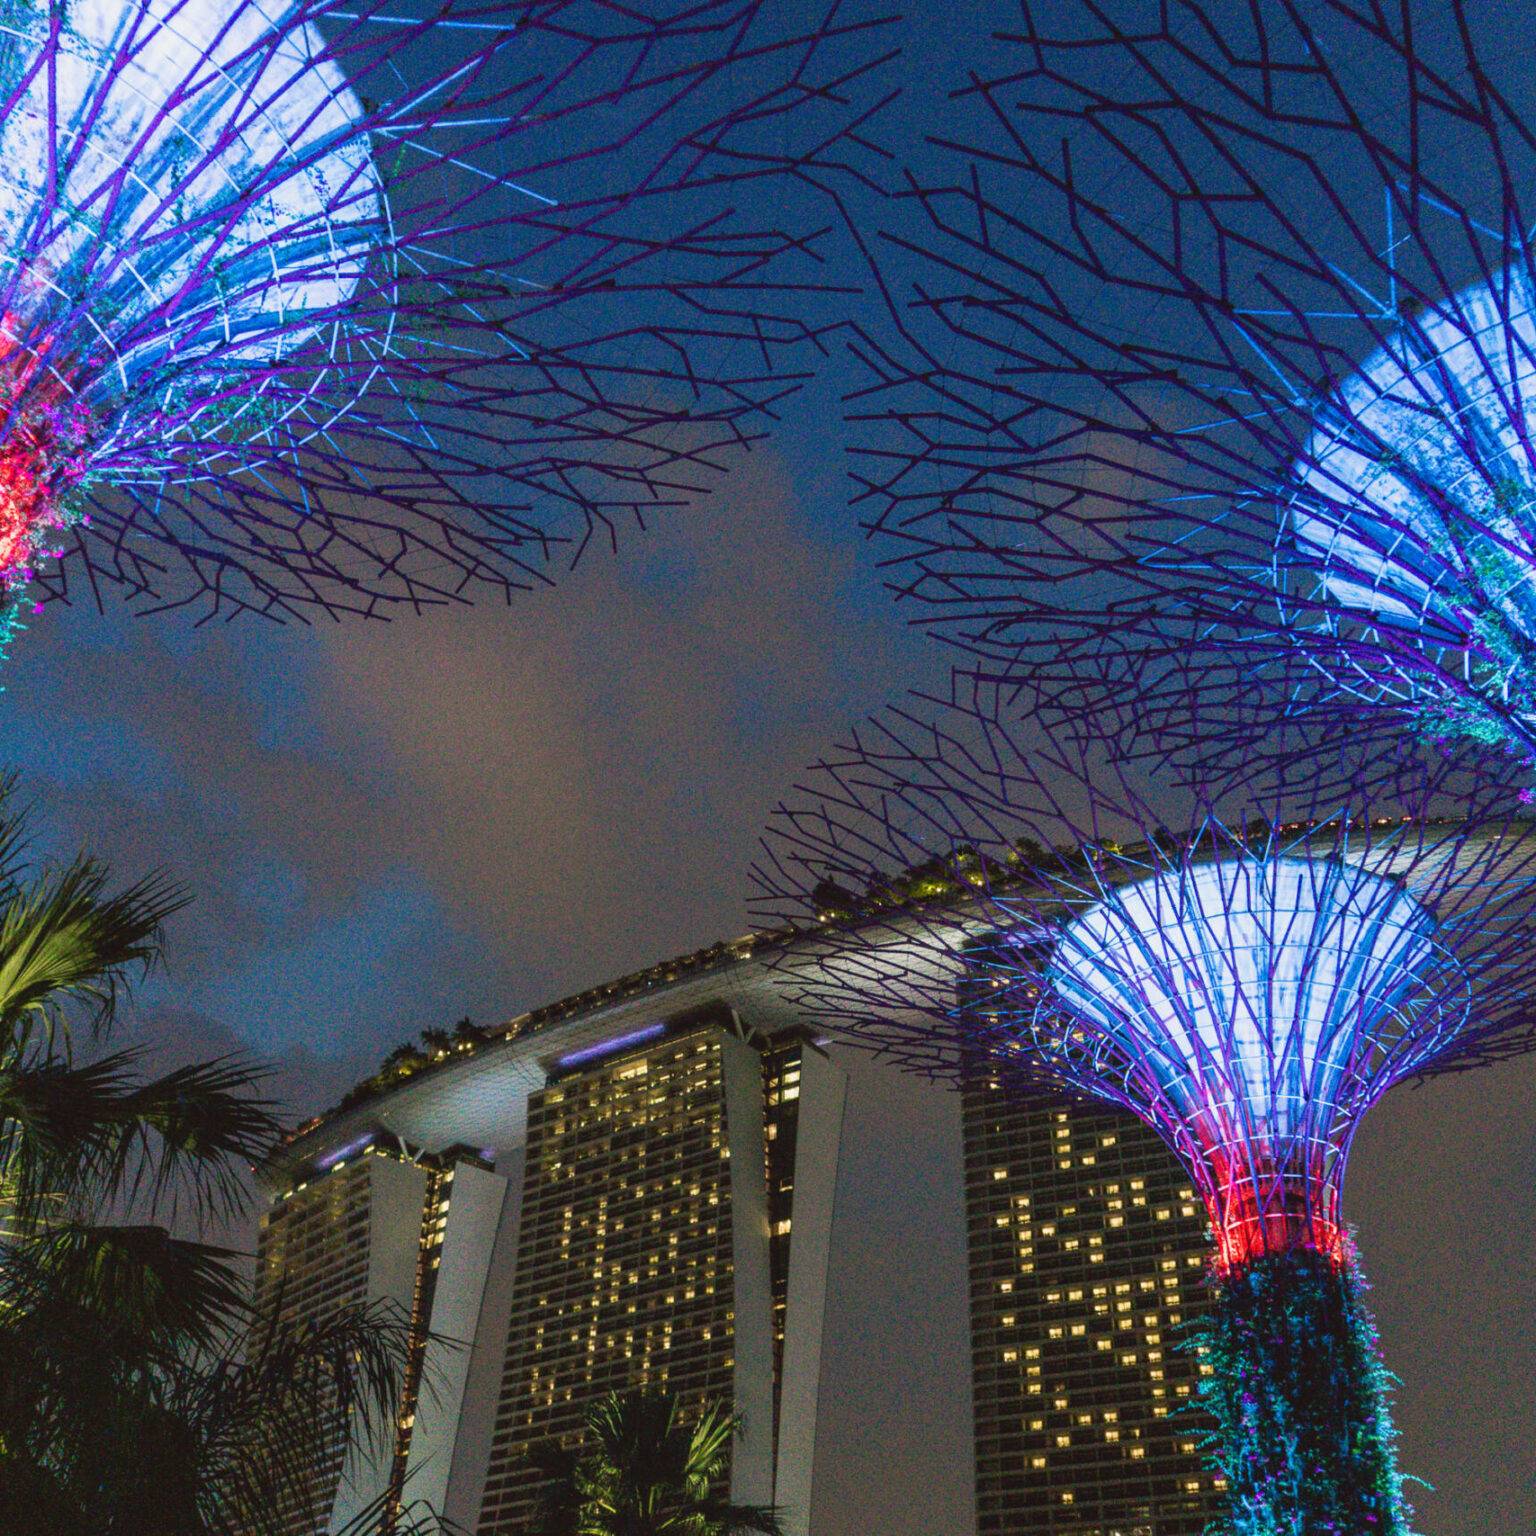 Künstlich erbaute Bäume, die in der Nacht in bunten Lichtern leuchten - die "Supertrees" in Singapur.